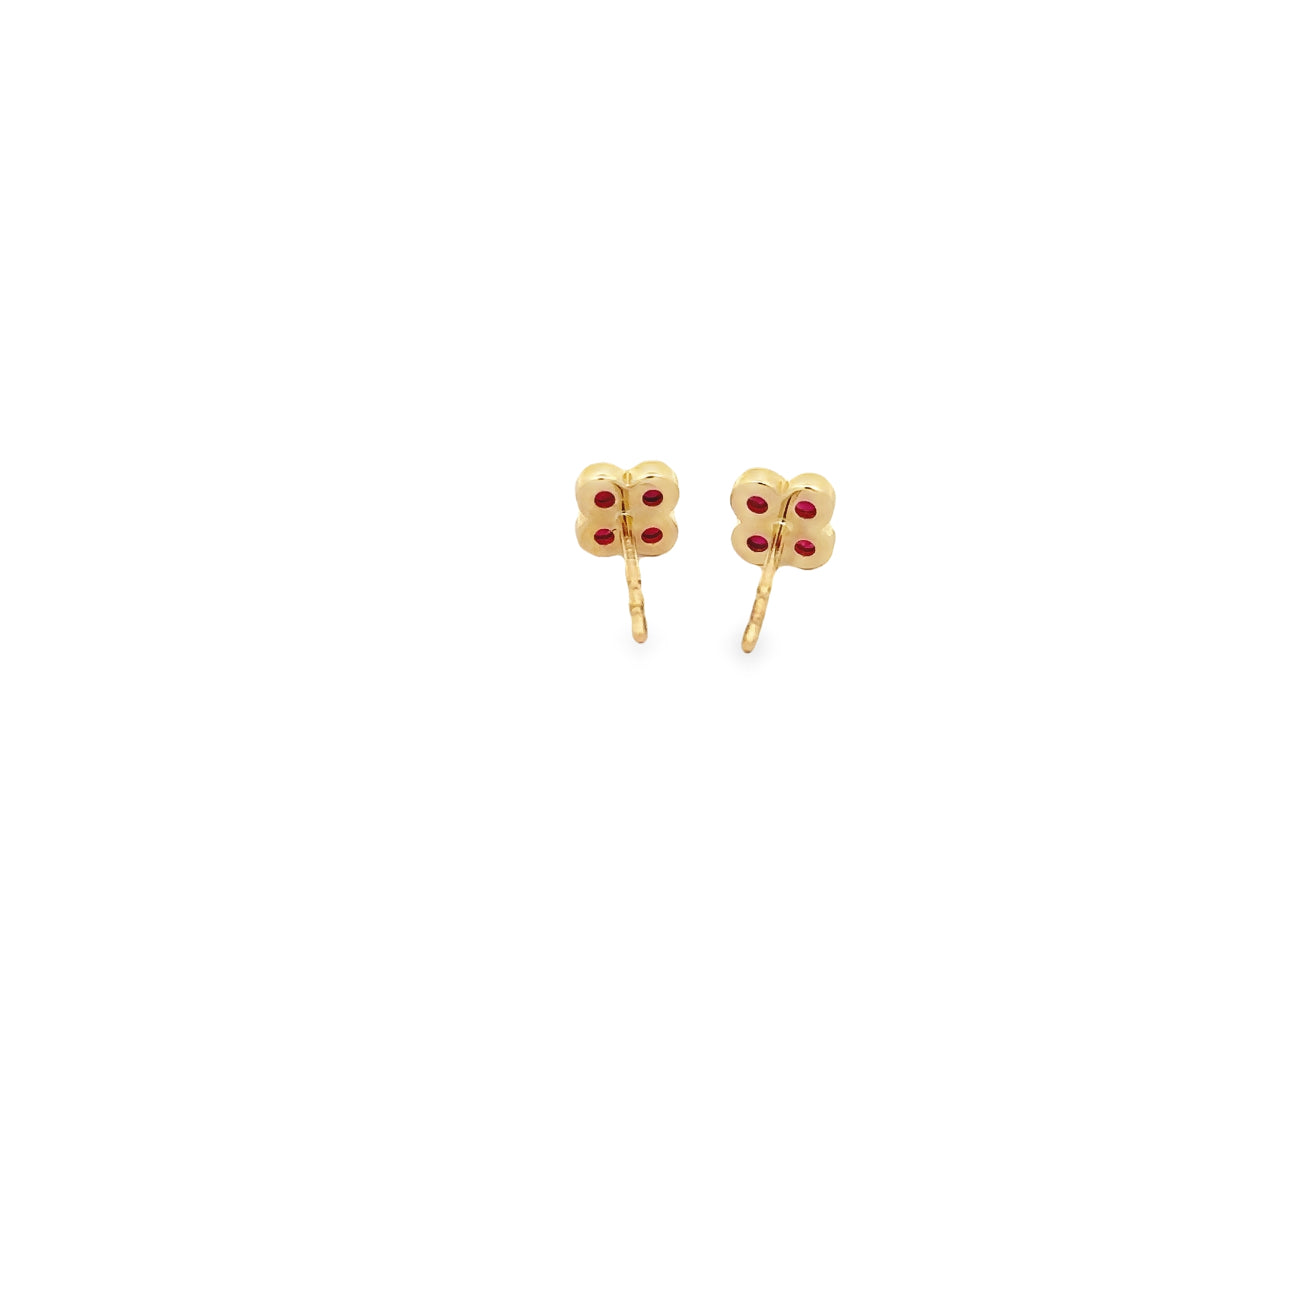 WD1297 14kt Gold Ruby Flower Stud Earrings